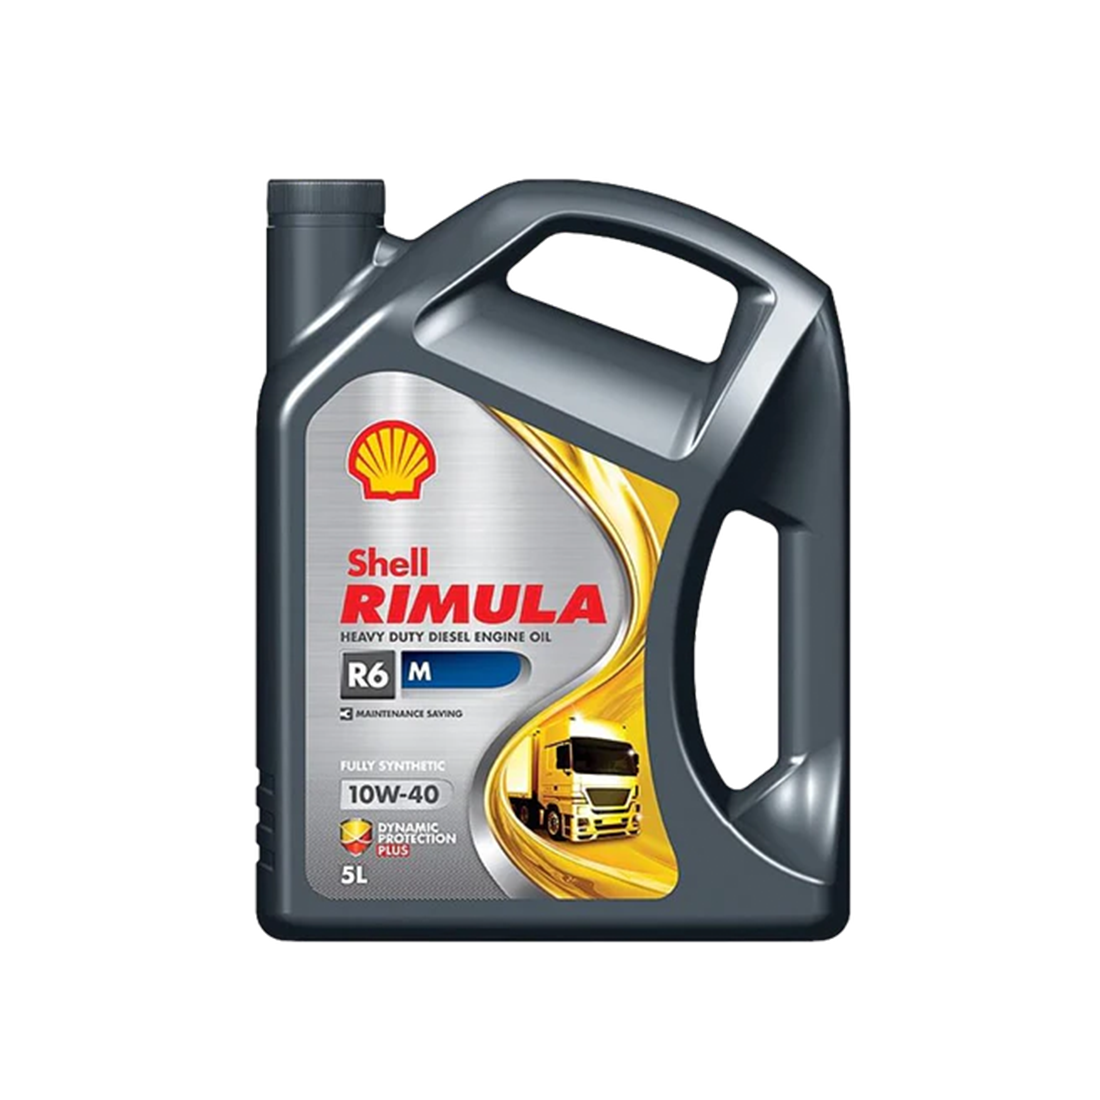 Shell Rimula R6 M 10W-40, 5L